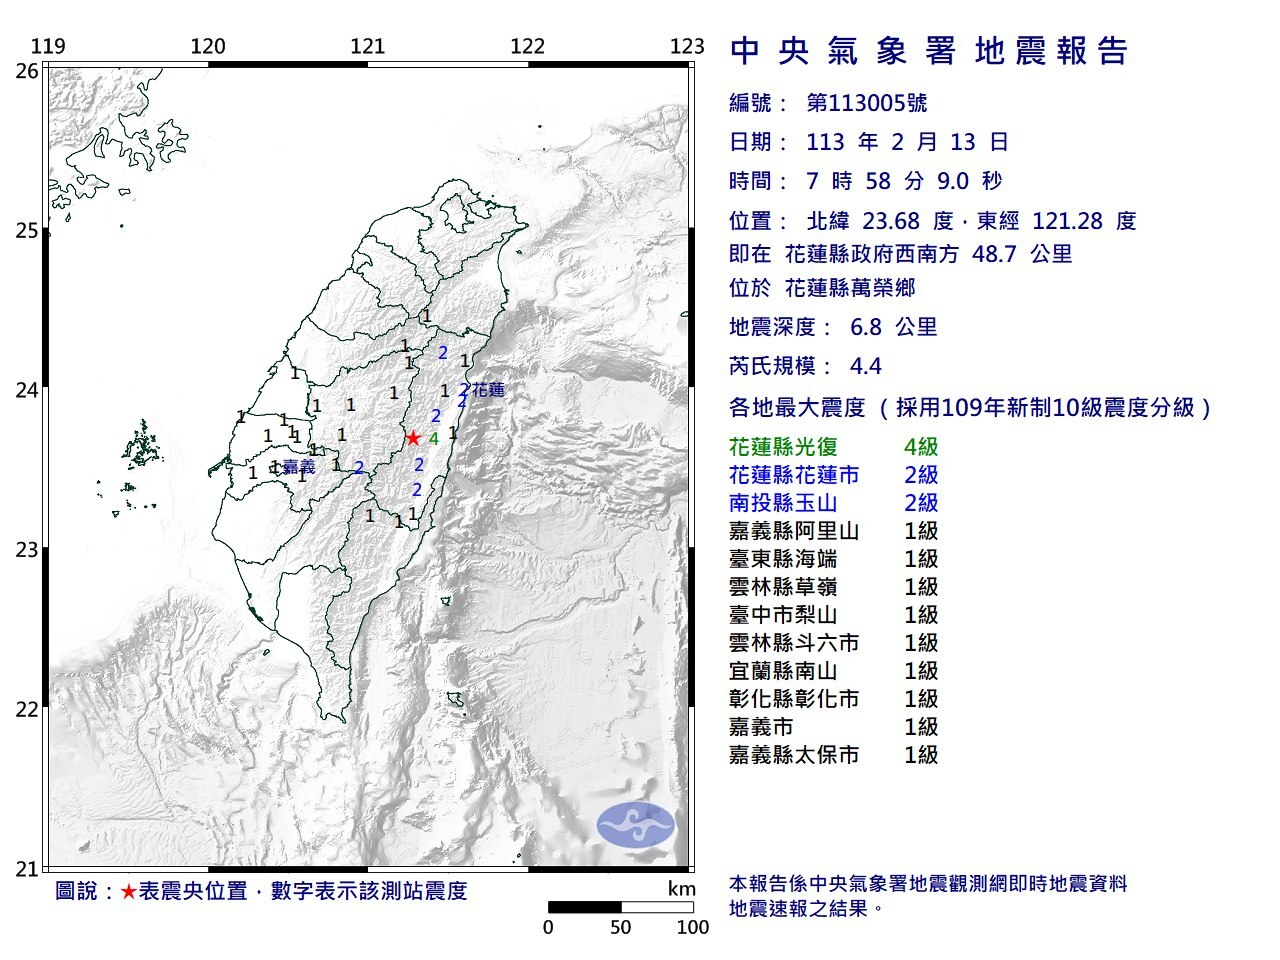 花蓮7:58地震規模4.4  最大震度達4級